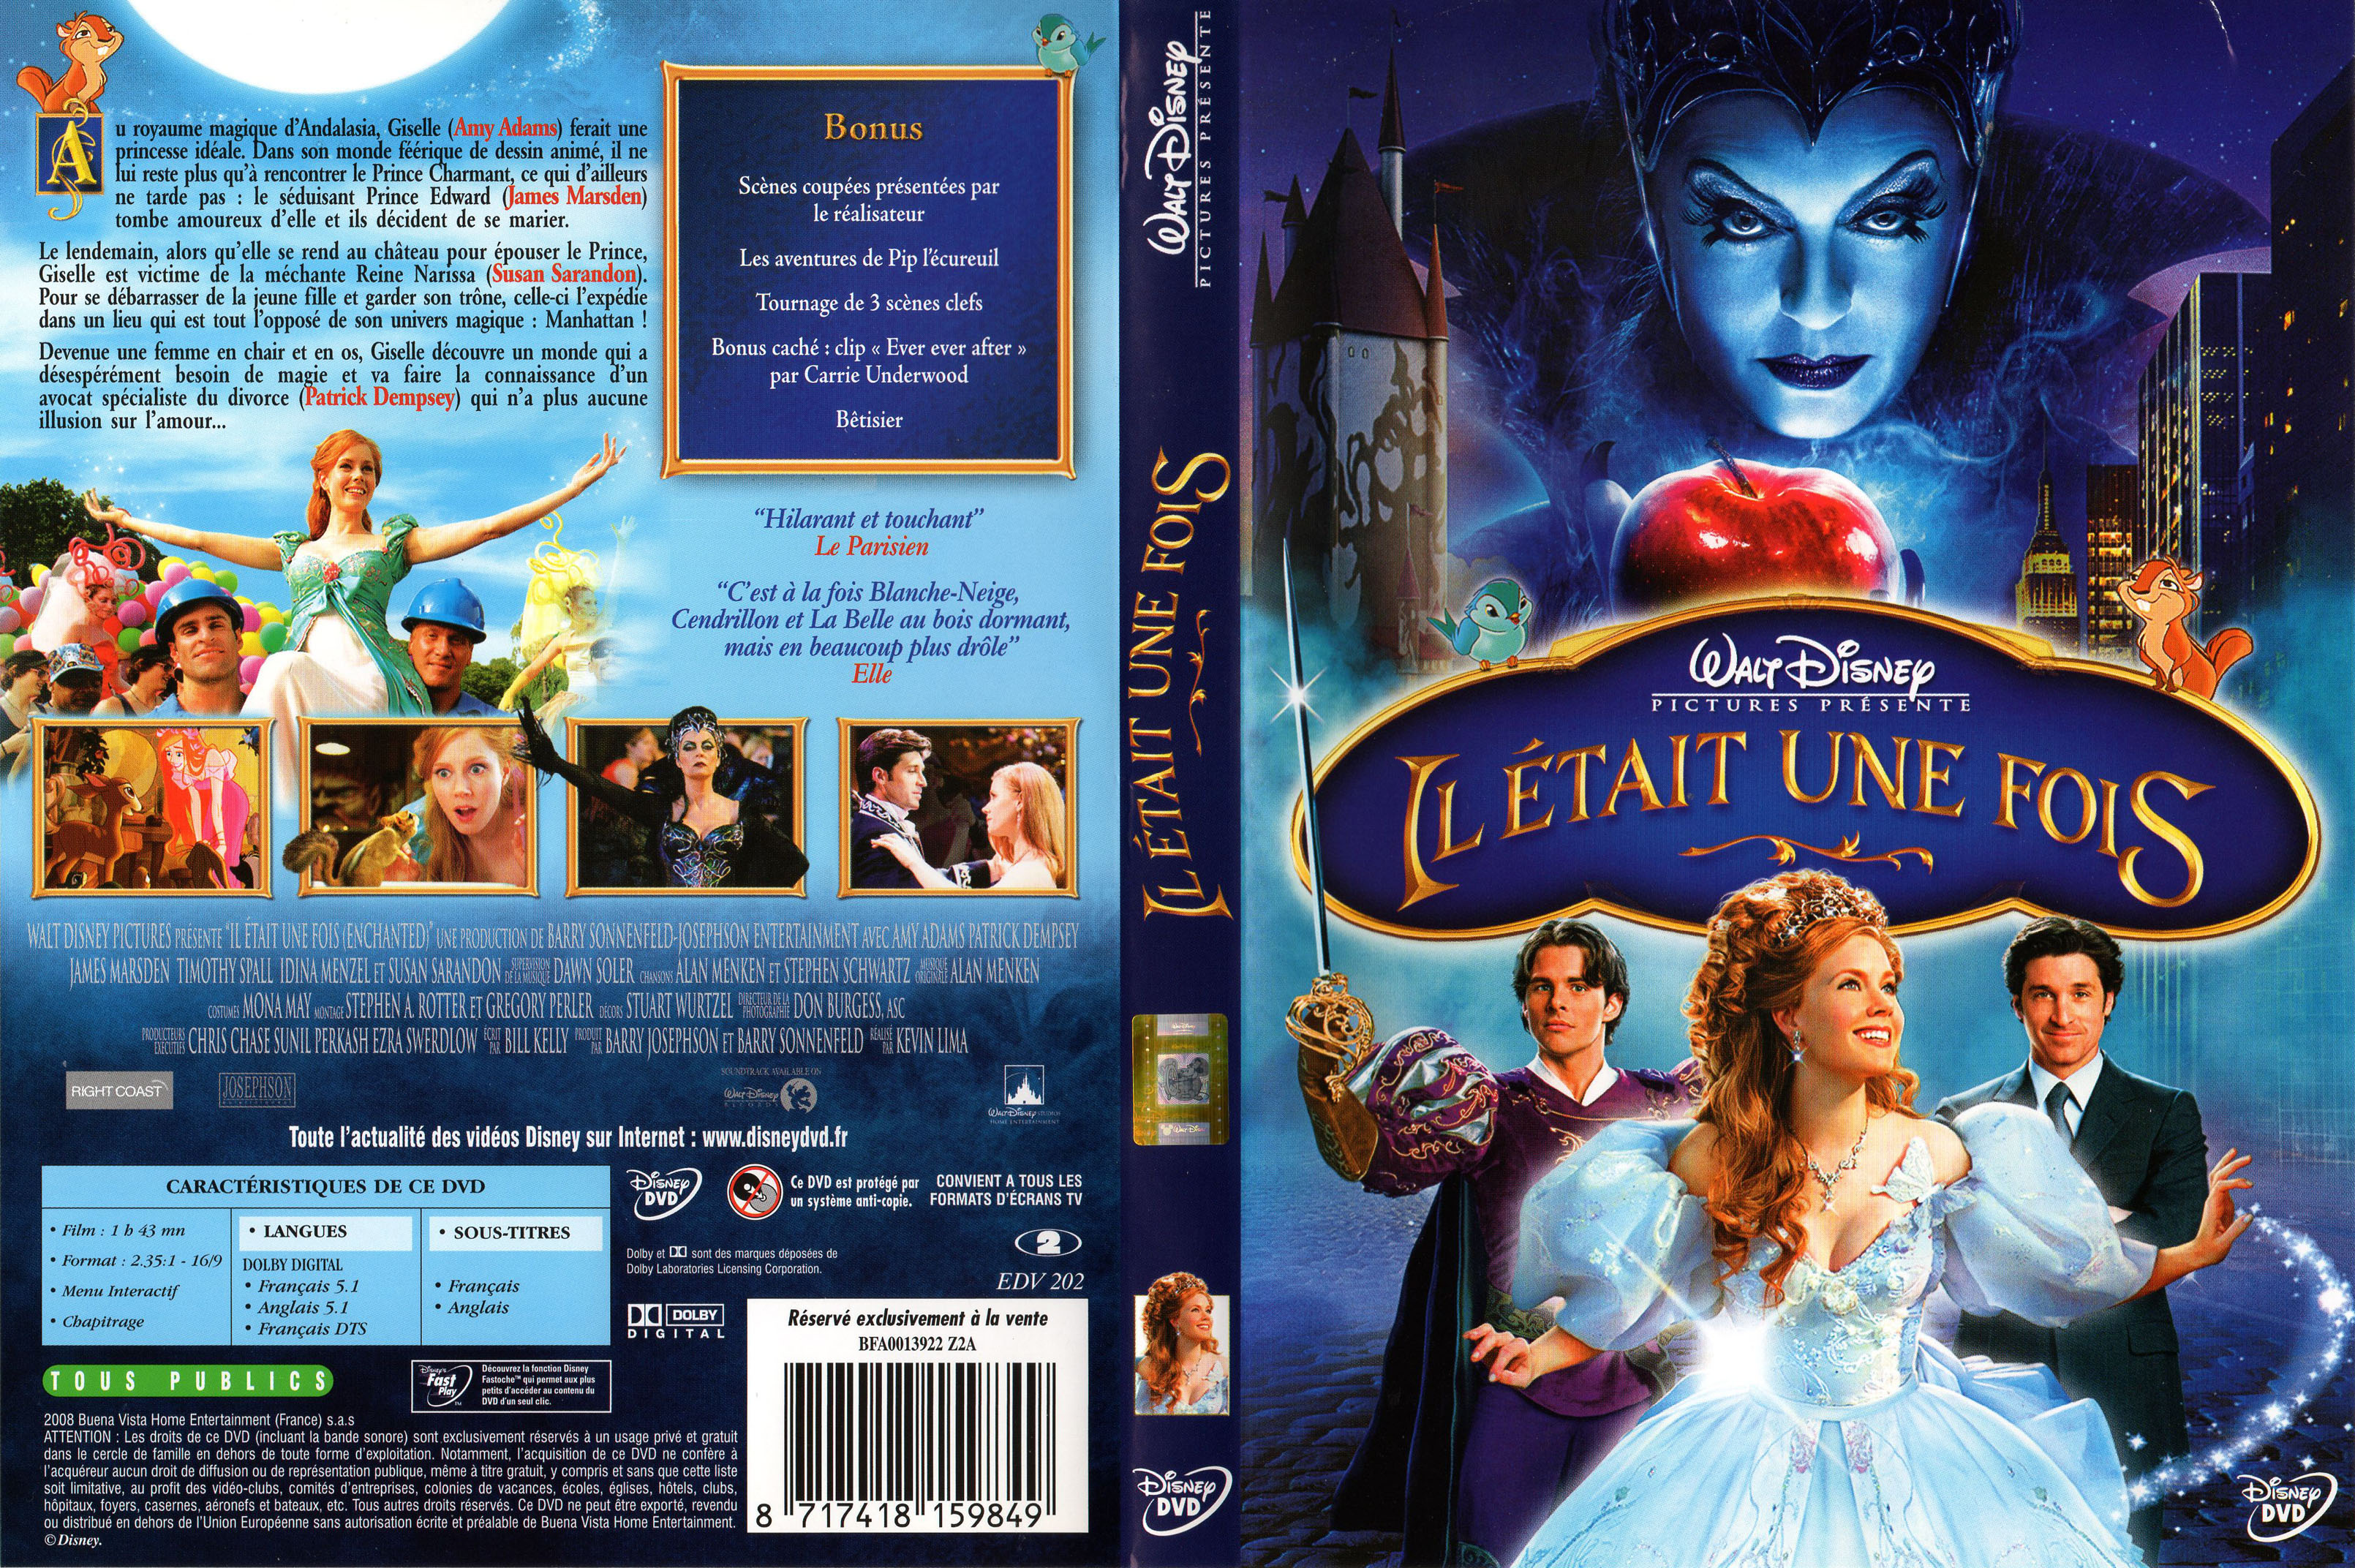 Jaquette DVD Il etait une fois (Disney) v4